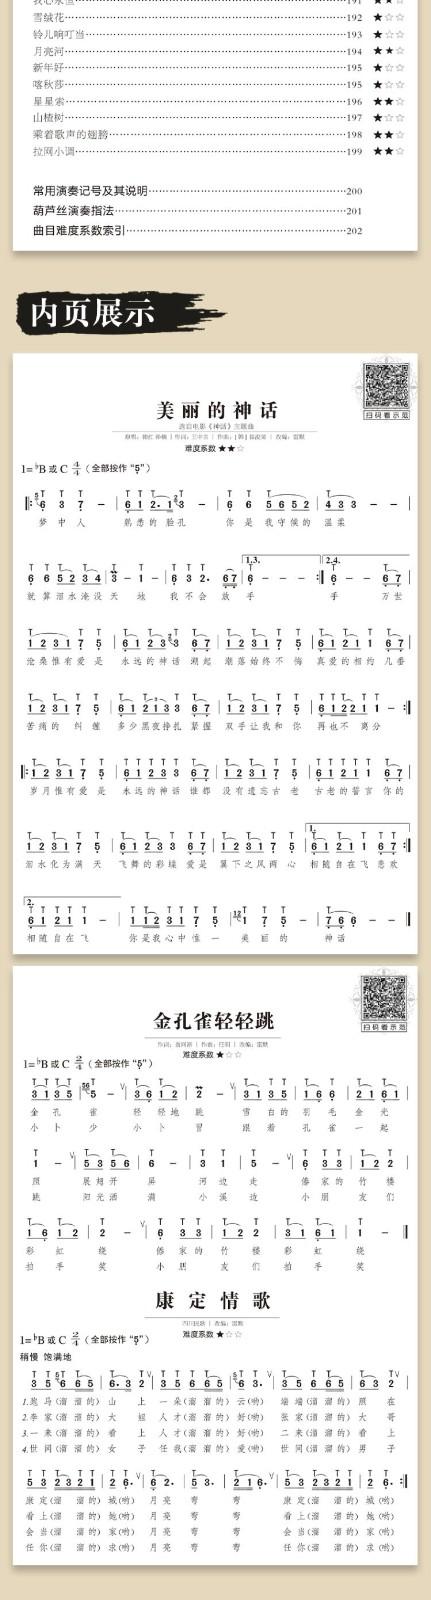 最易演奏葫芦丝流行金曲176首 初学者初学入门自学独奏流行歌曲经典曲